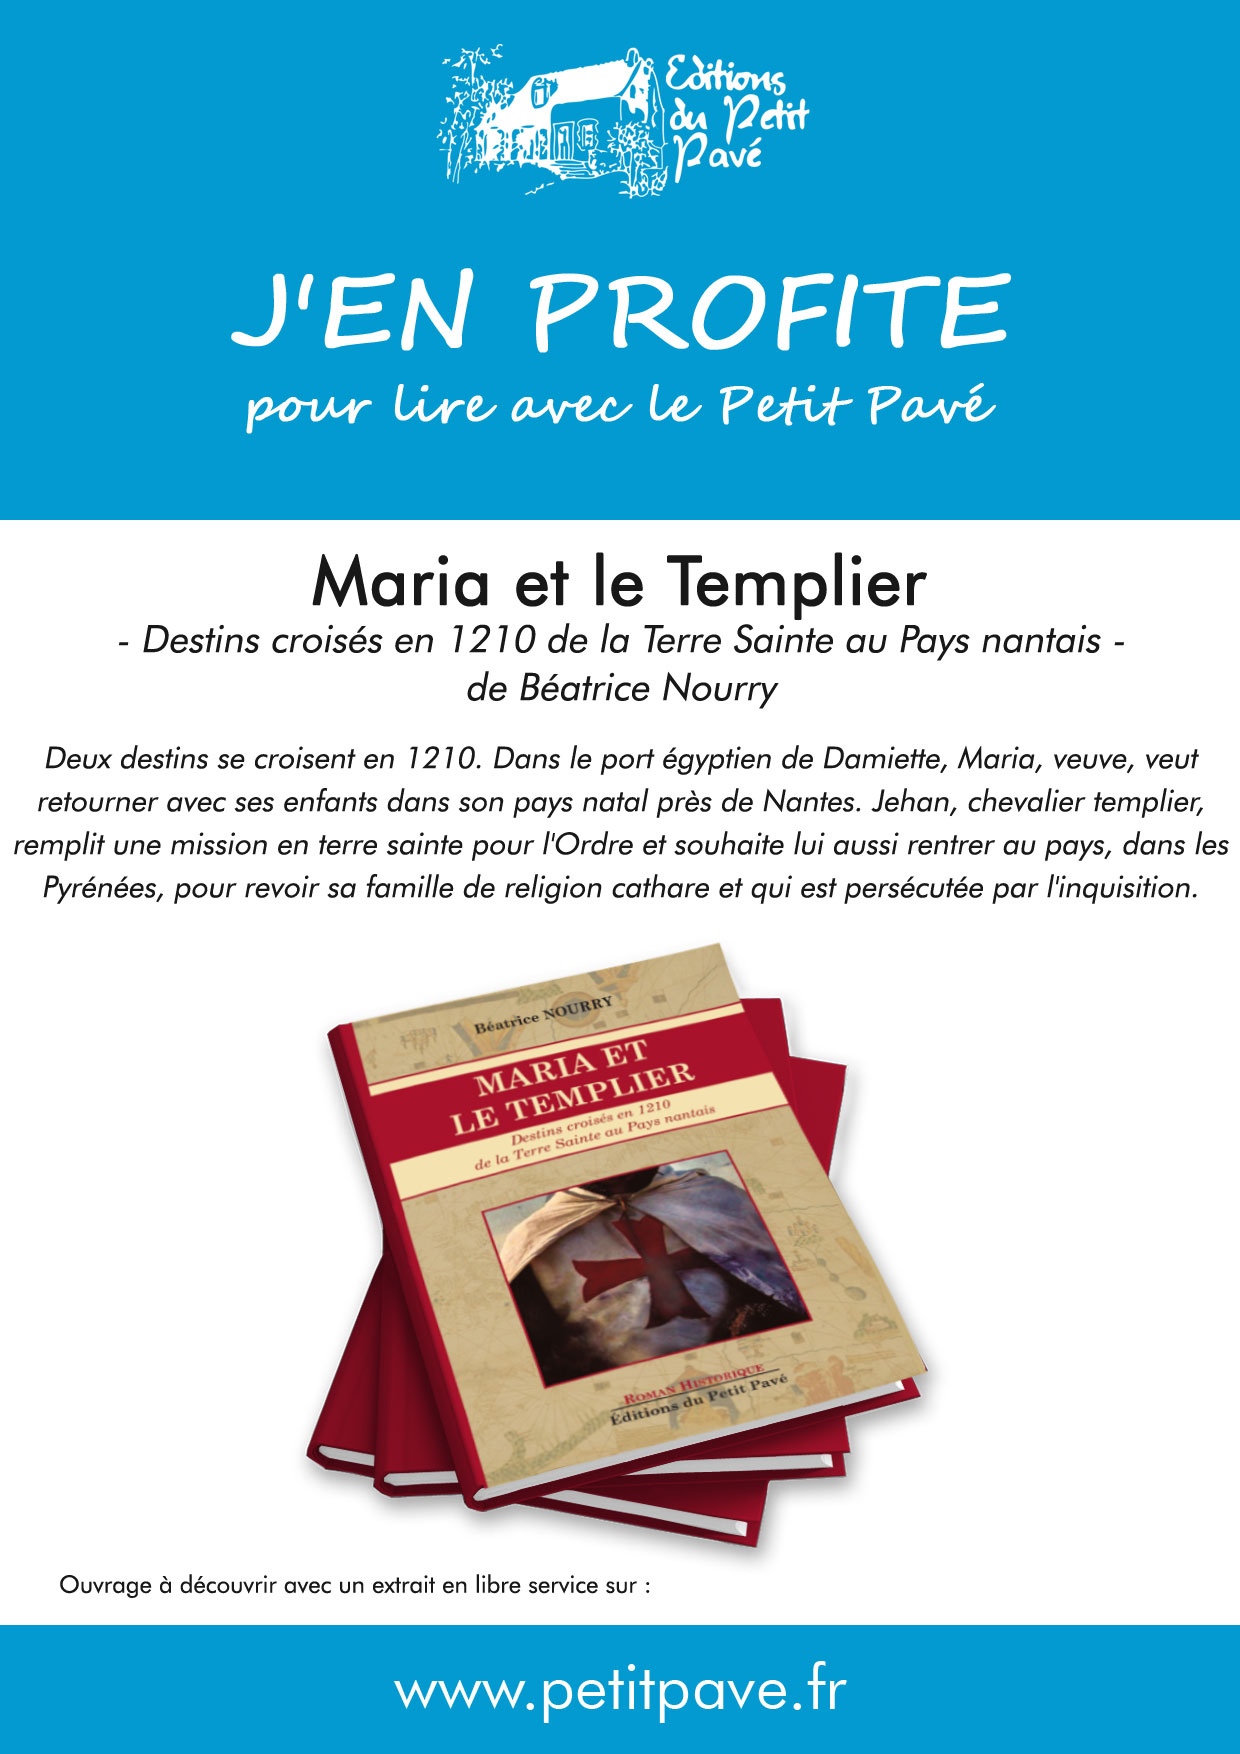 Maria et le Templier - Photo jenprofite_maria-templier.jpg